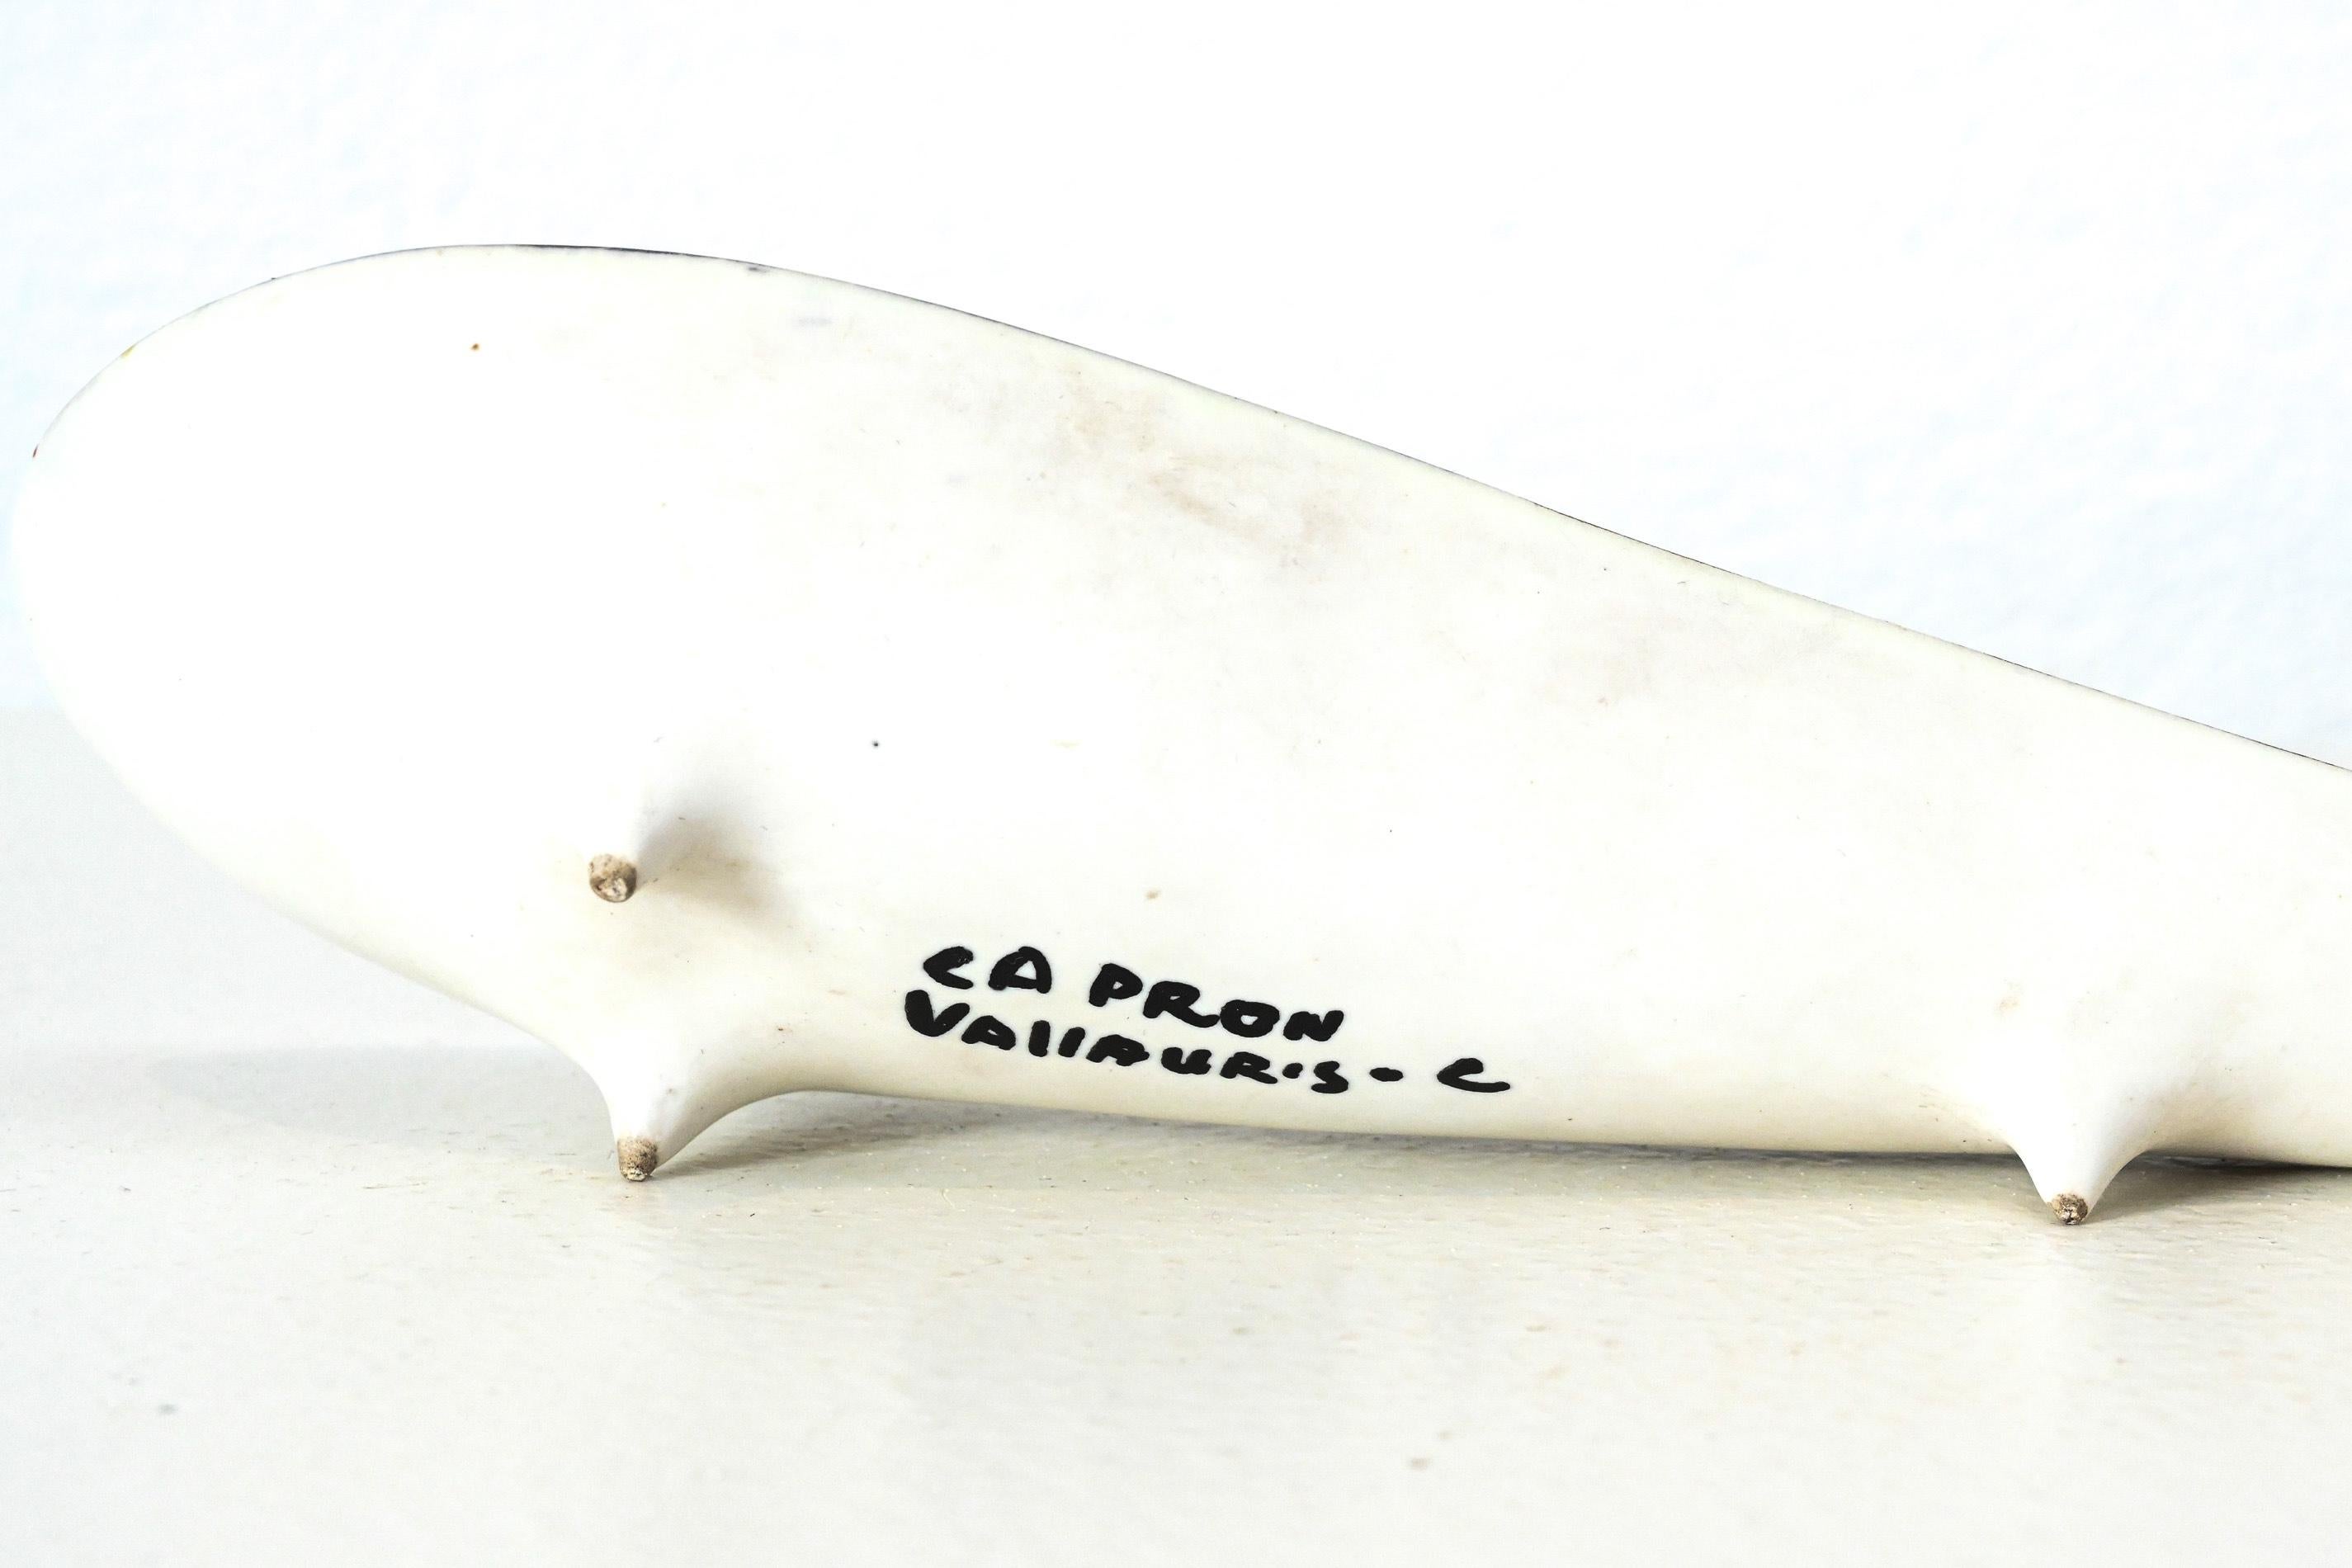 Feine tränenförmige Roger Capron Keramik-Videotasche

mit Pyjama-Dekoration.

Hergestellt in seinen Werkstätten in Vallauris in den 1950er Jahren